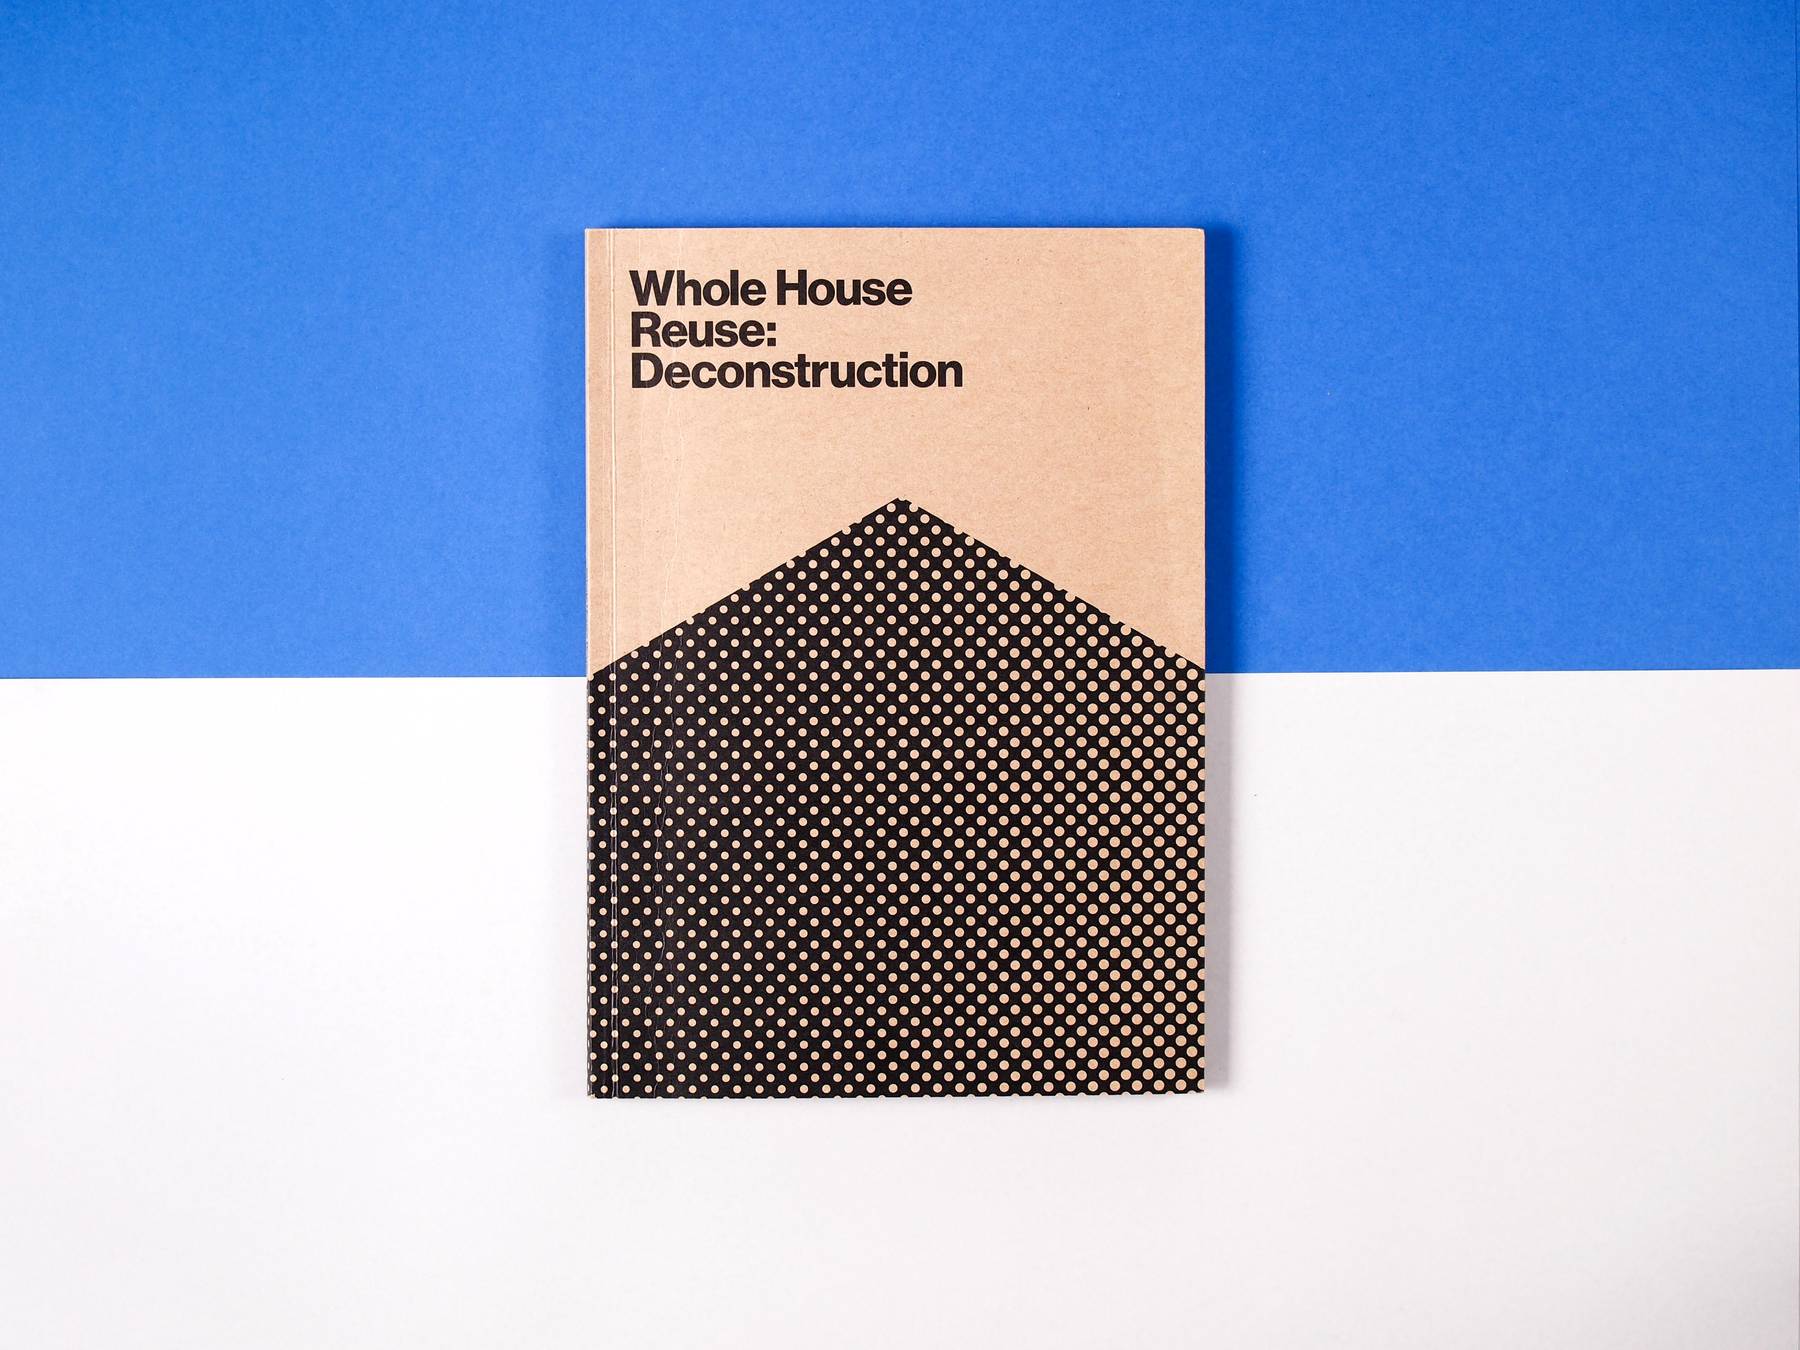 Whole House Reuse: Deconstruction image